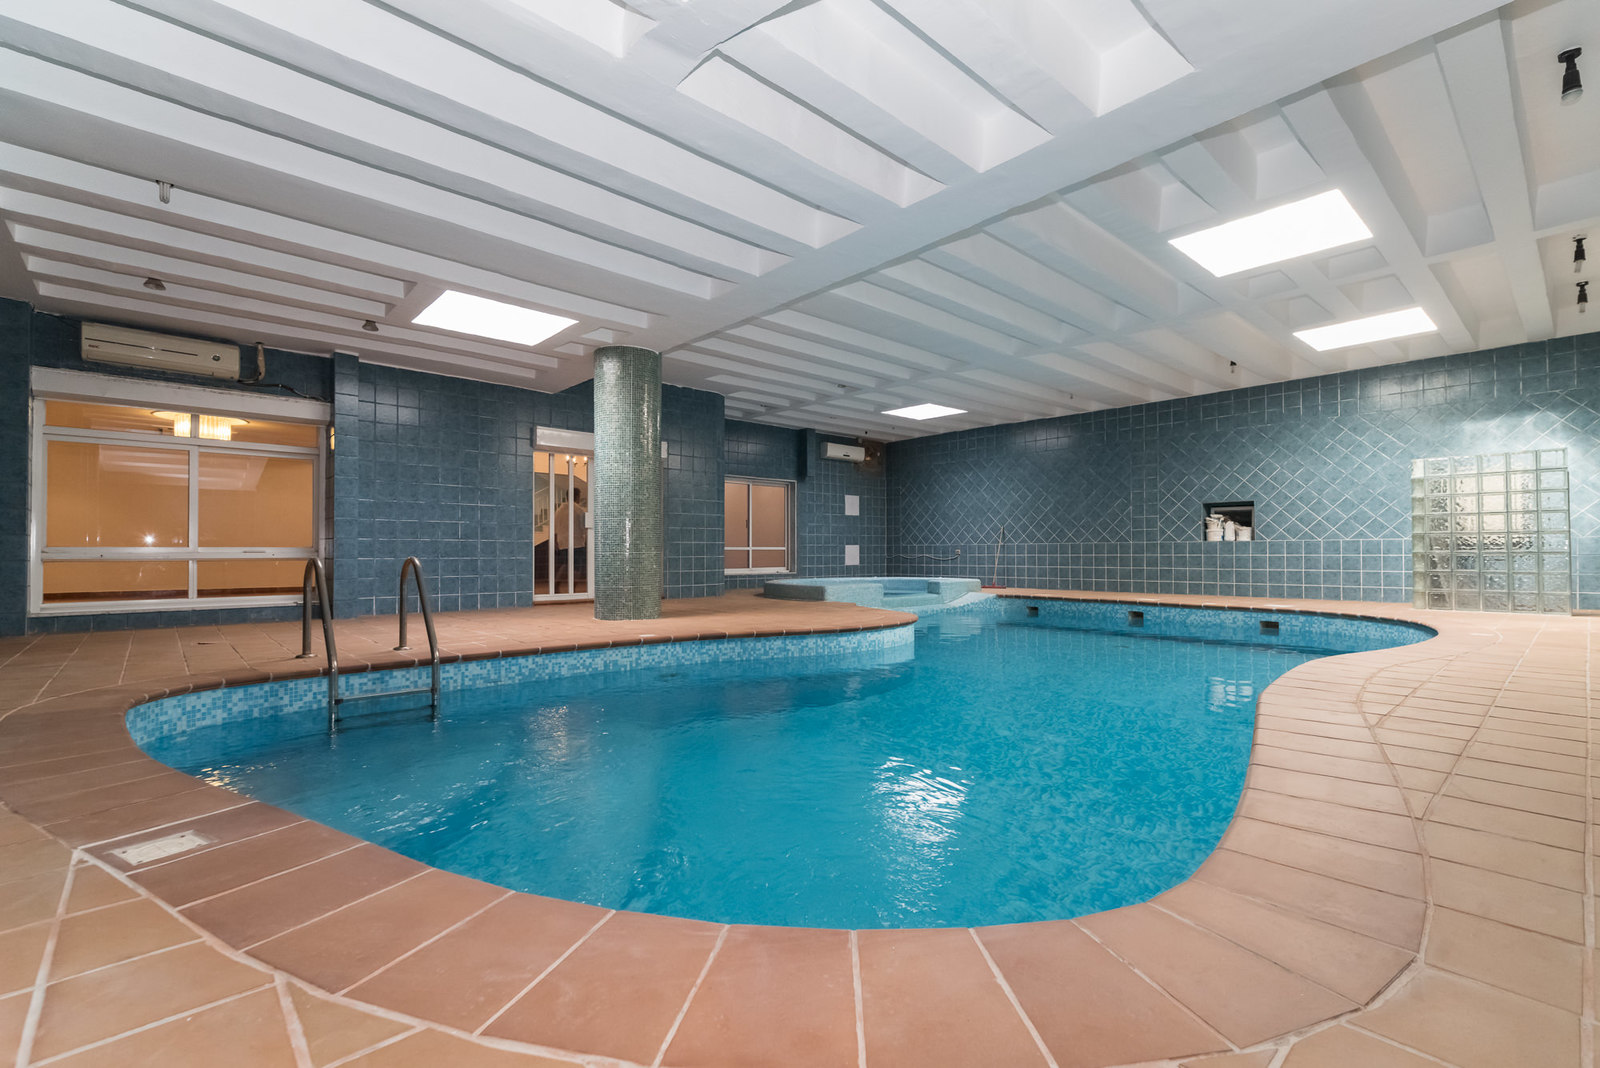 Surra – older, unfurnished, five bedroom villa w/basement and pool